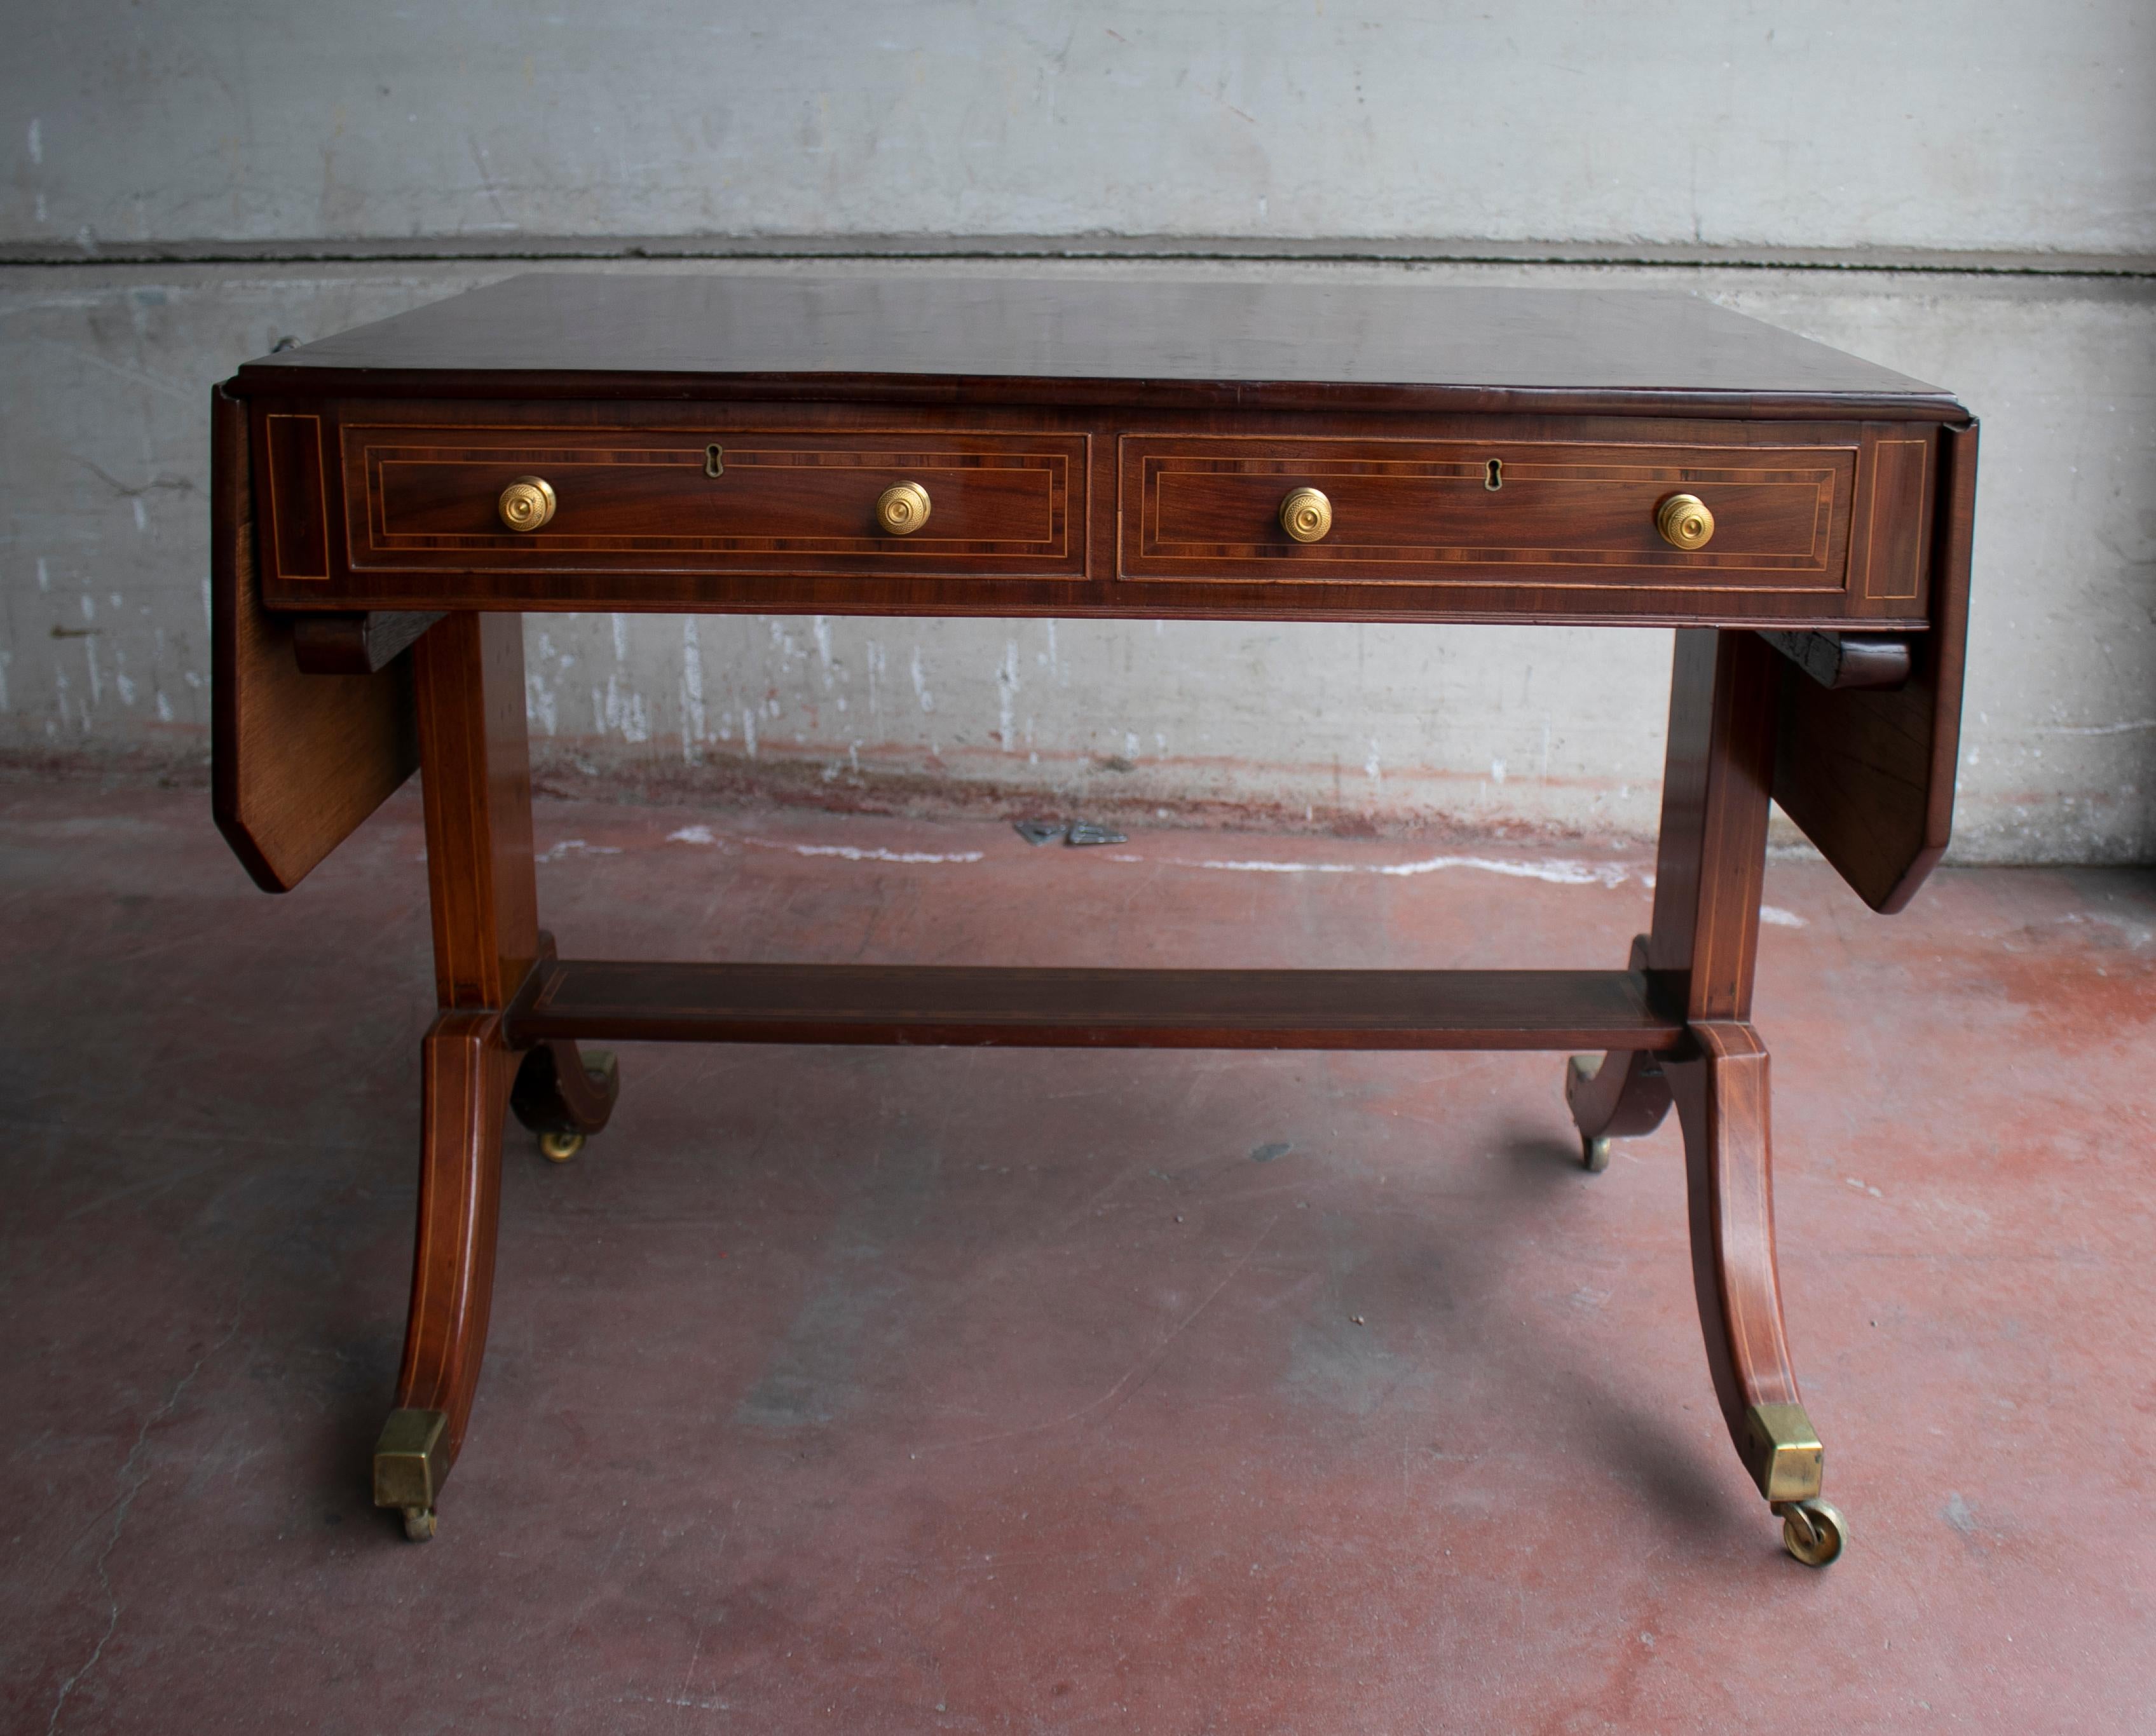 table pliante anglaise du 19ème siècle en acajou.

Largeur totale ouverte : 150cm.